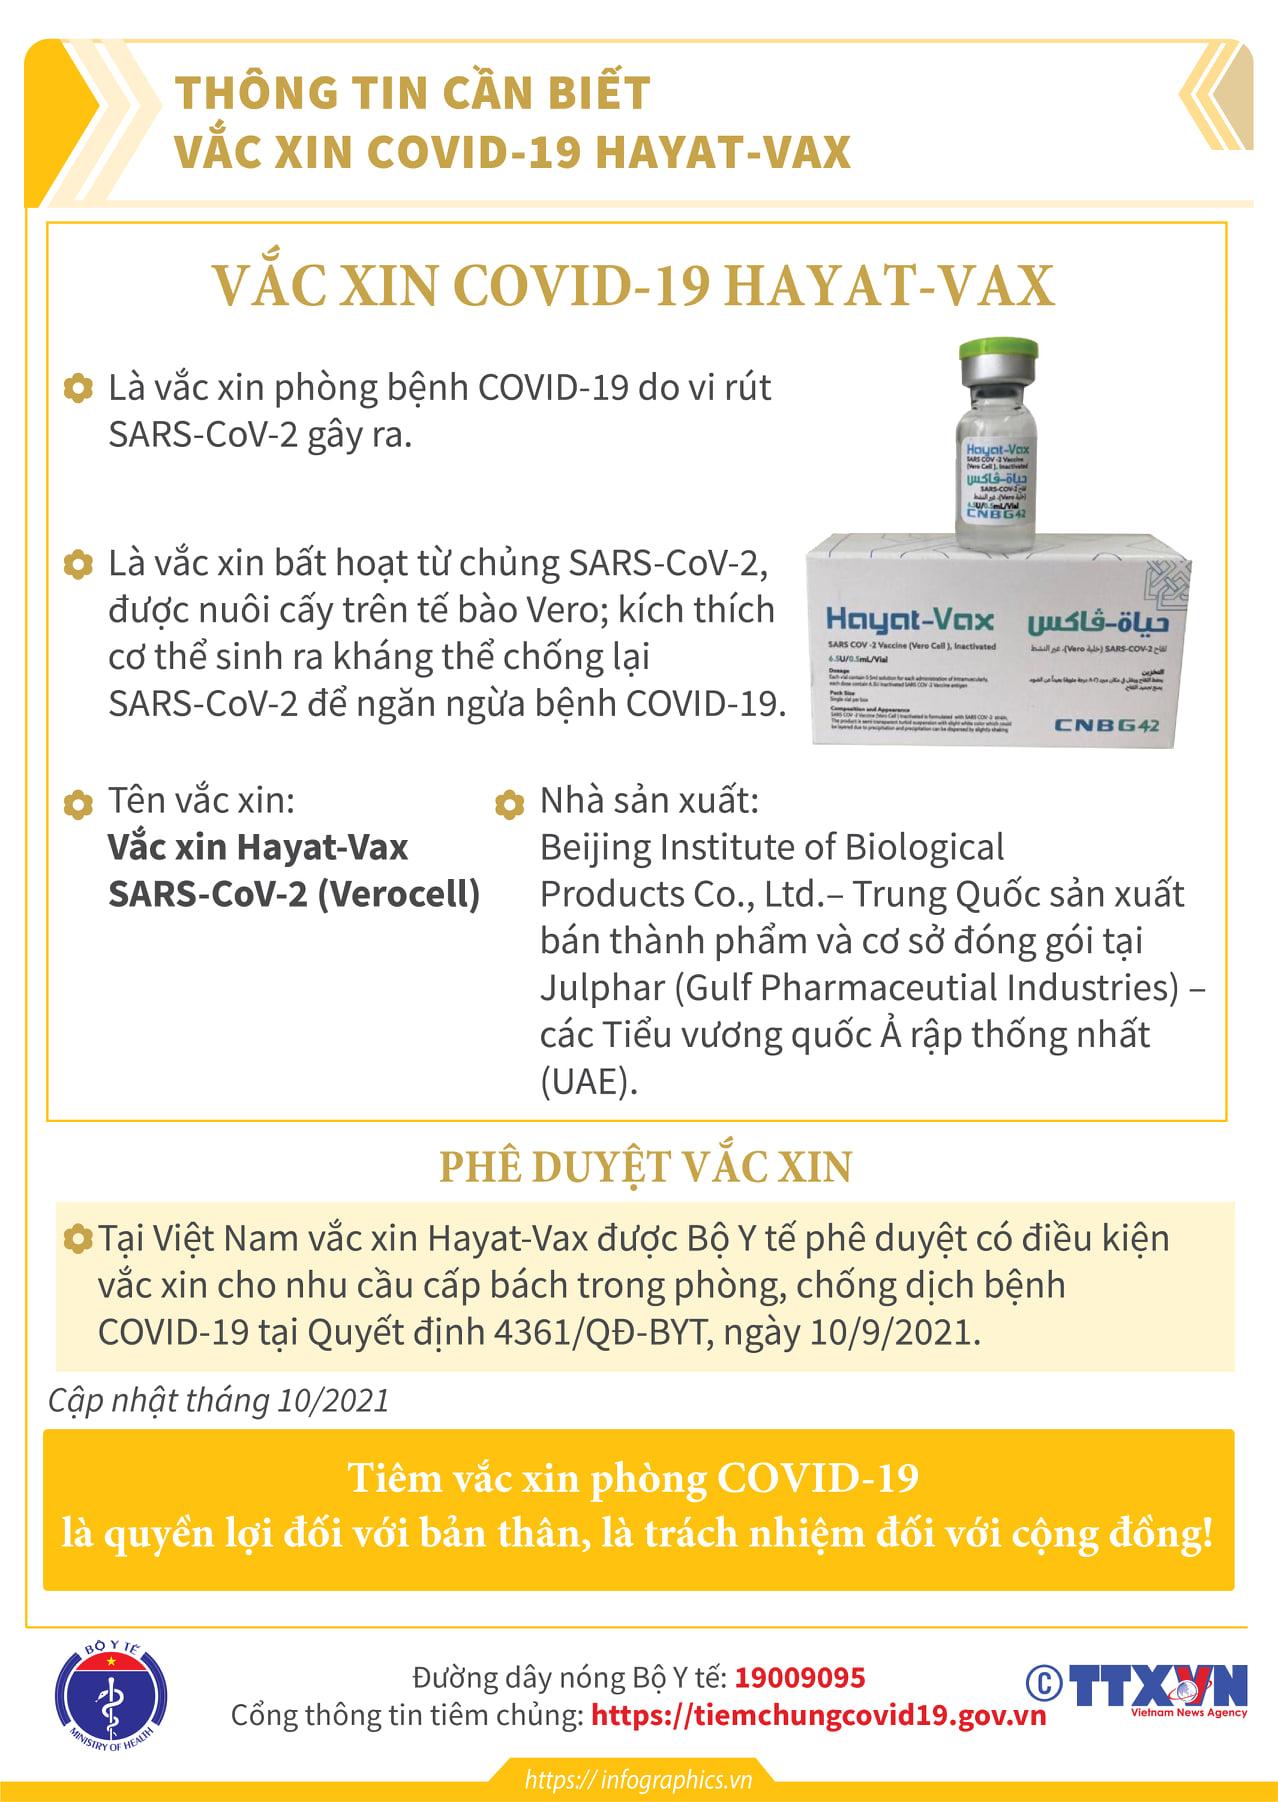 Thông tin về 3 loại vaccine Verocell, Abdala, Hayal-Ax